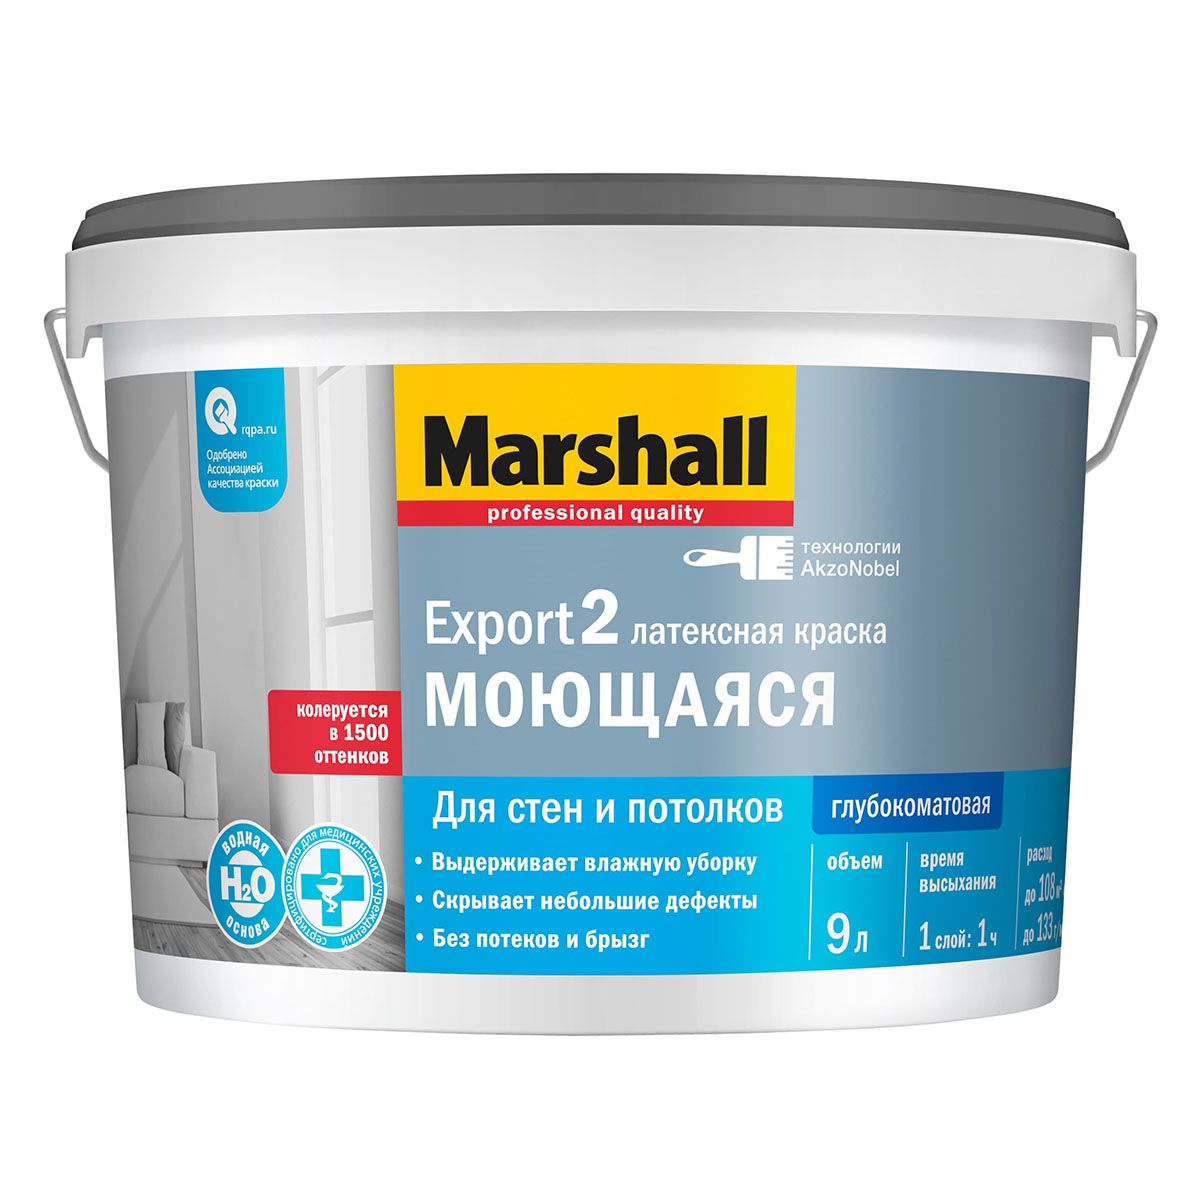 Краска Marshall Export 7 латексная, матовая, база BW, 9 л латексная интерьерная влагостойкая воднодисперсионная краска profilux